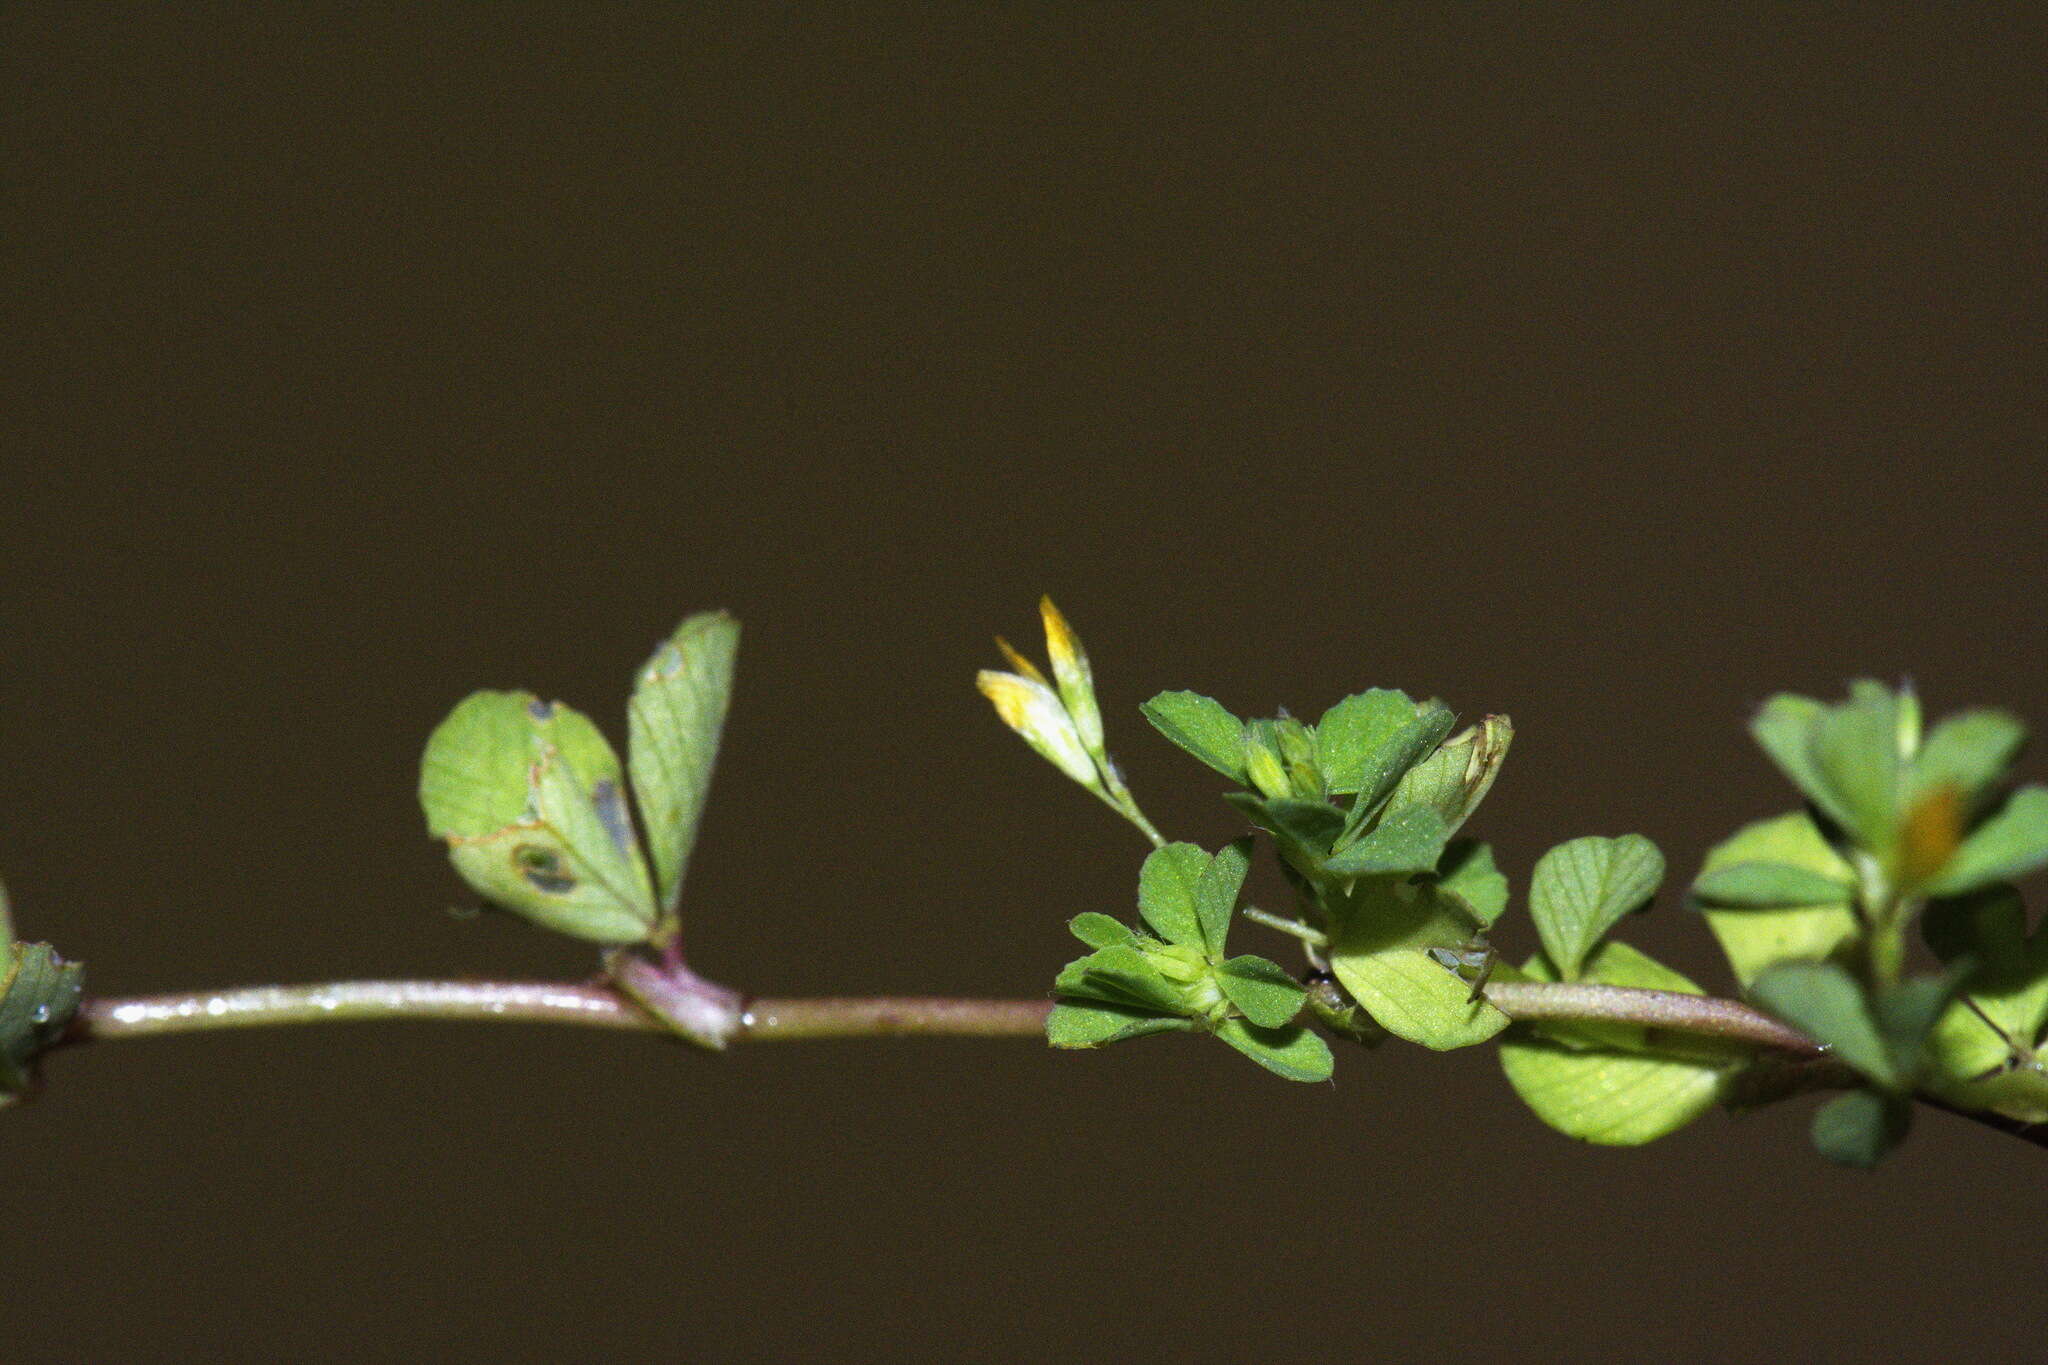 Image of slender hop clover